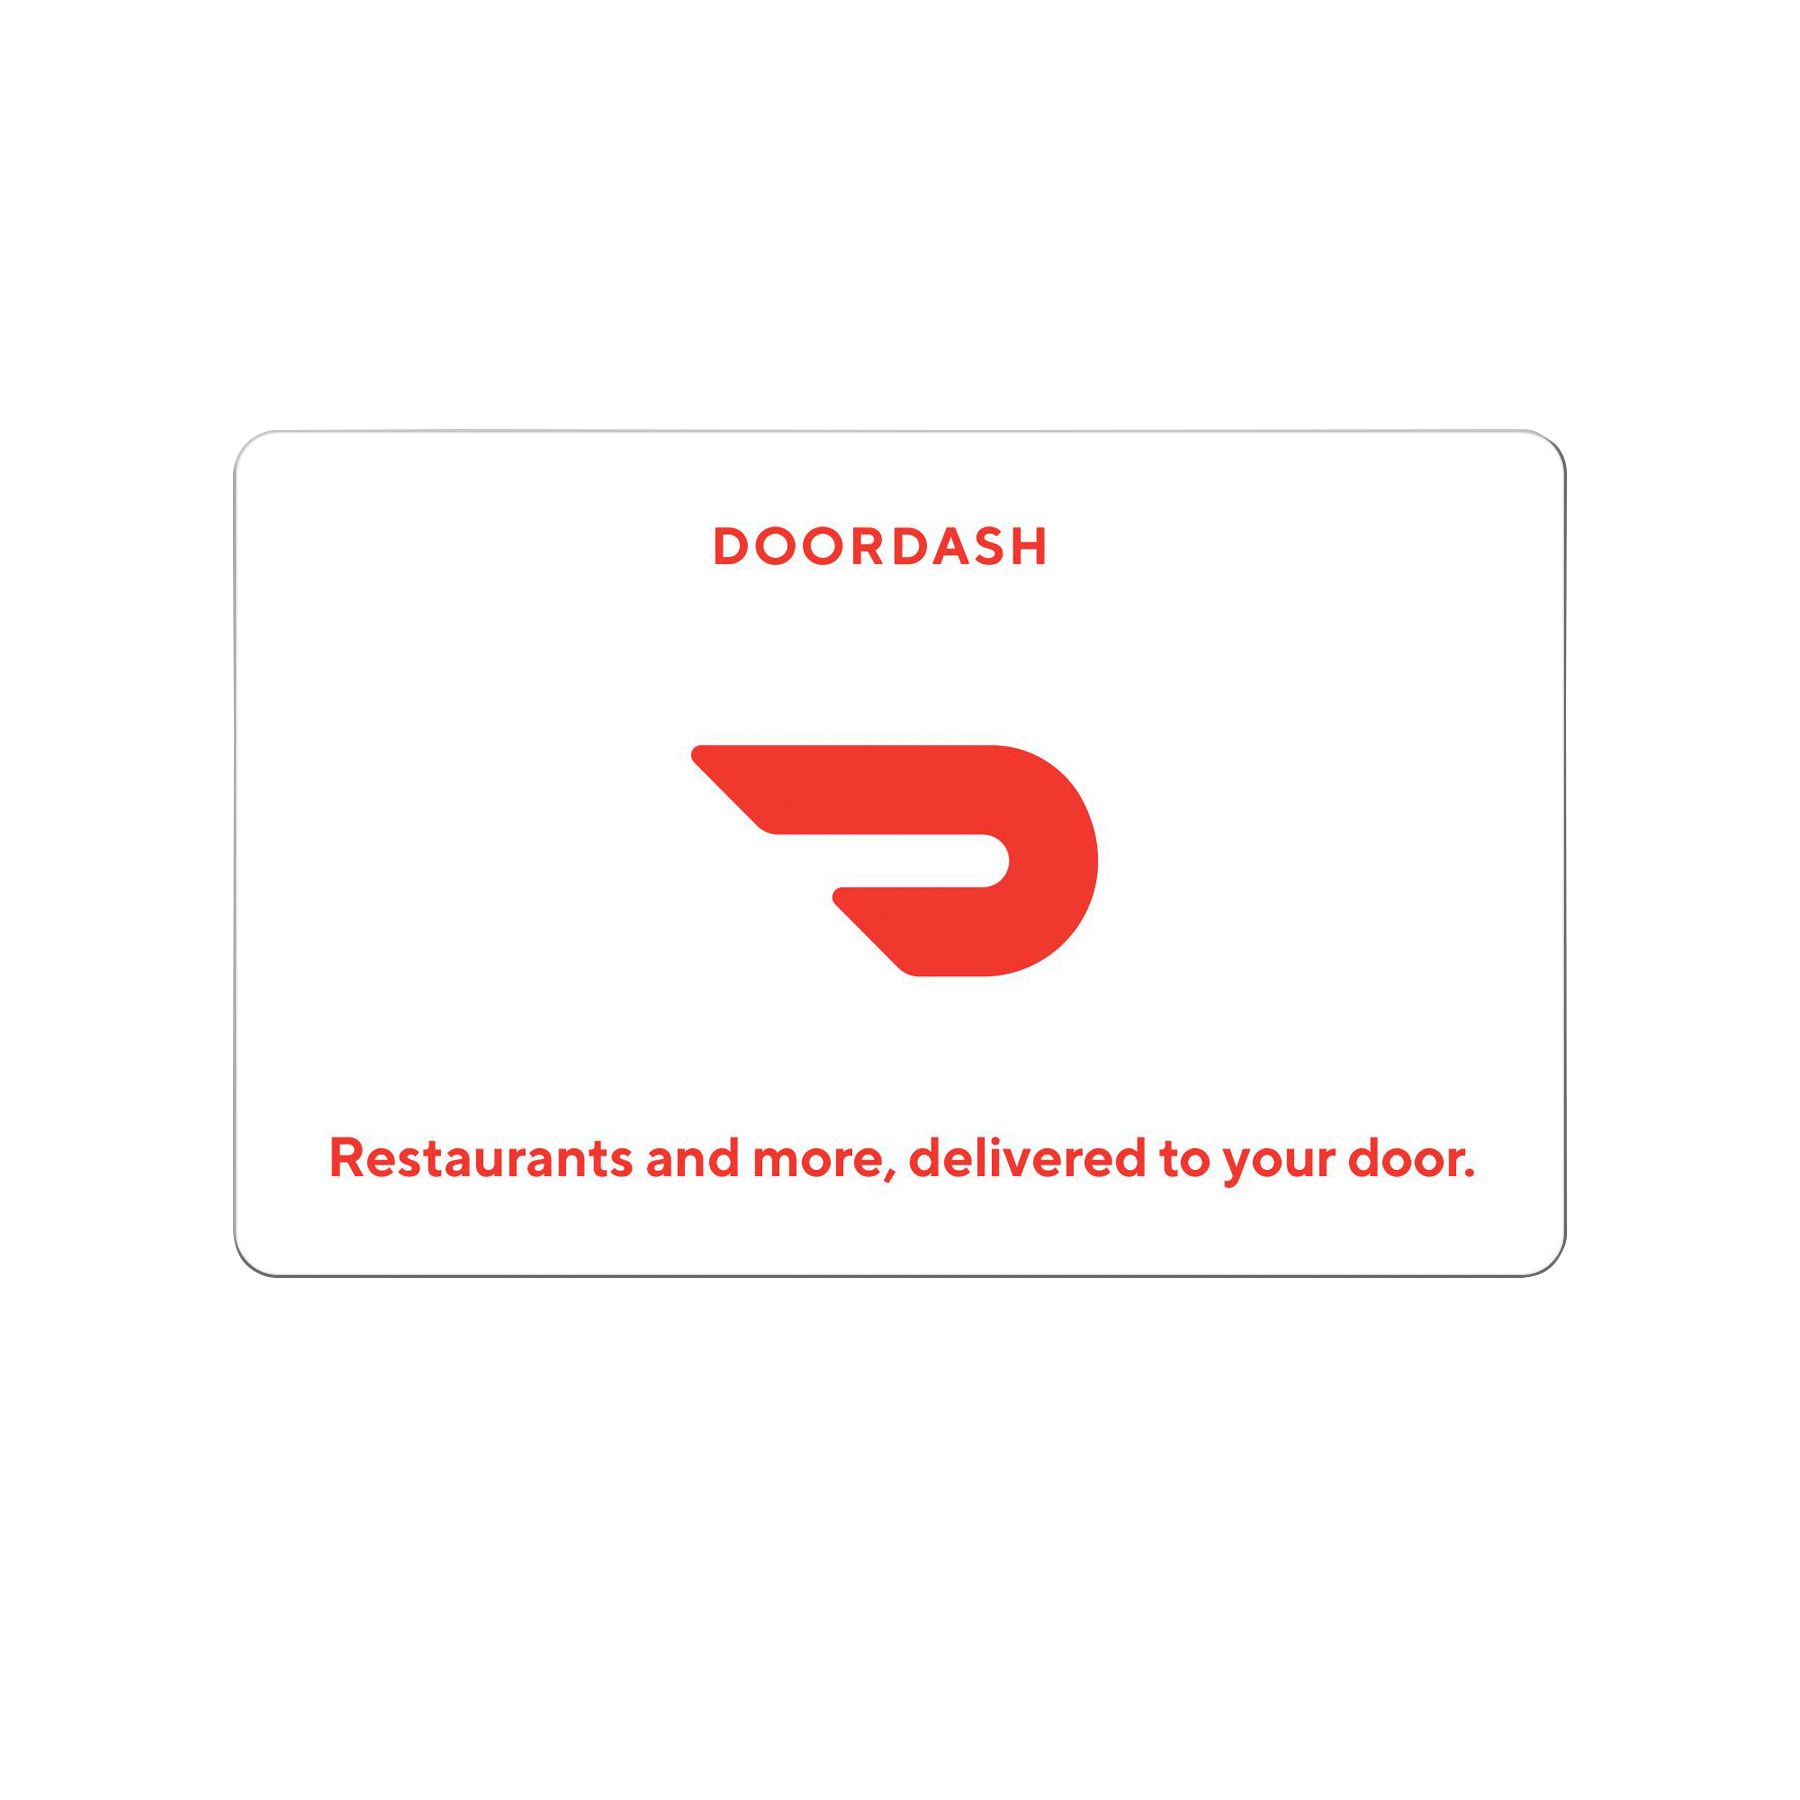 $100 DoorDash Gift Card